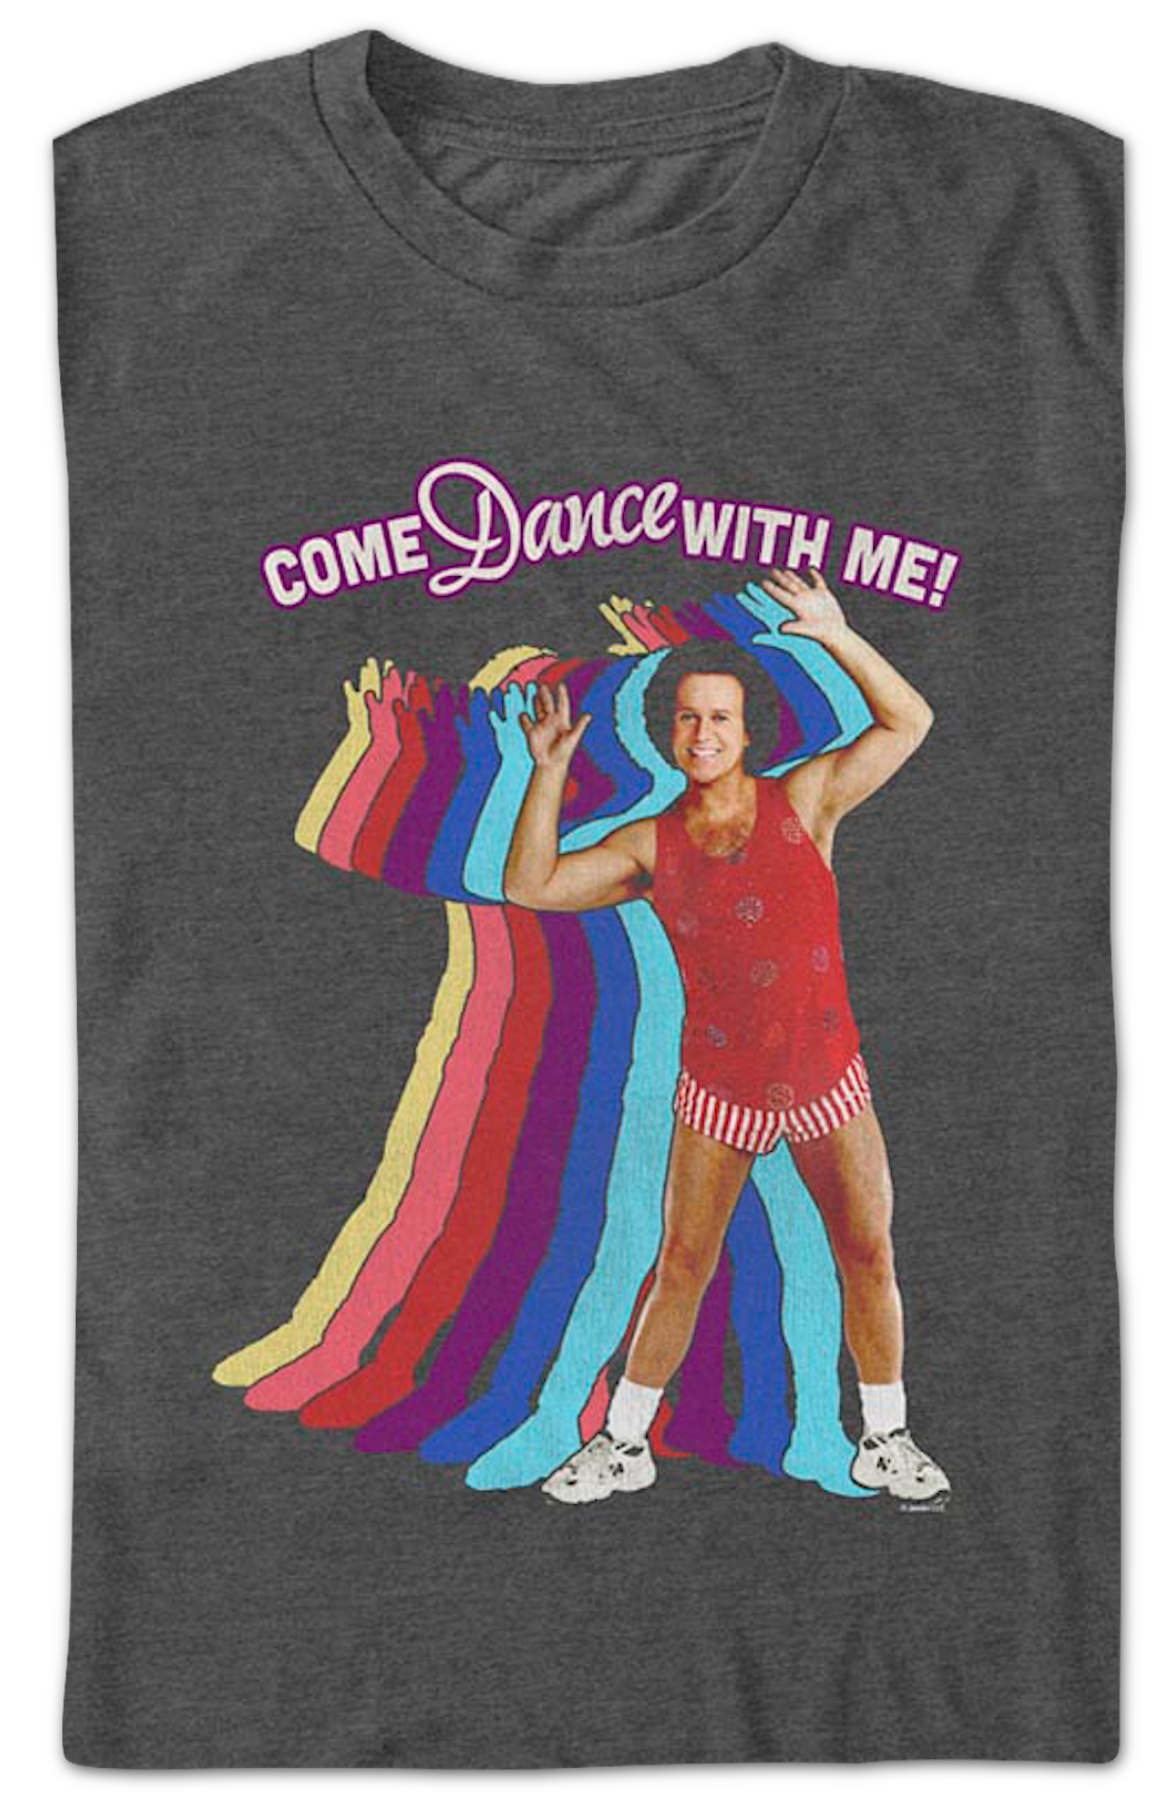 Come Dance With Me Richard Simmons T-Shirt